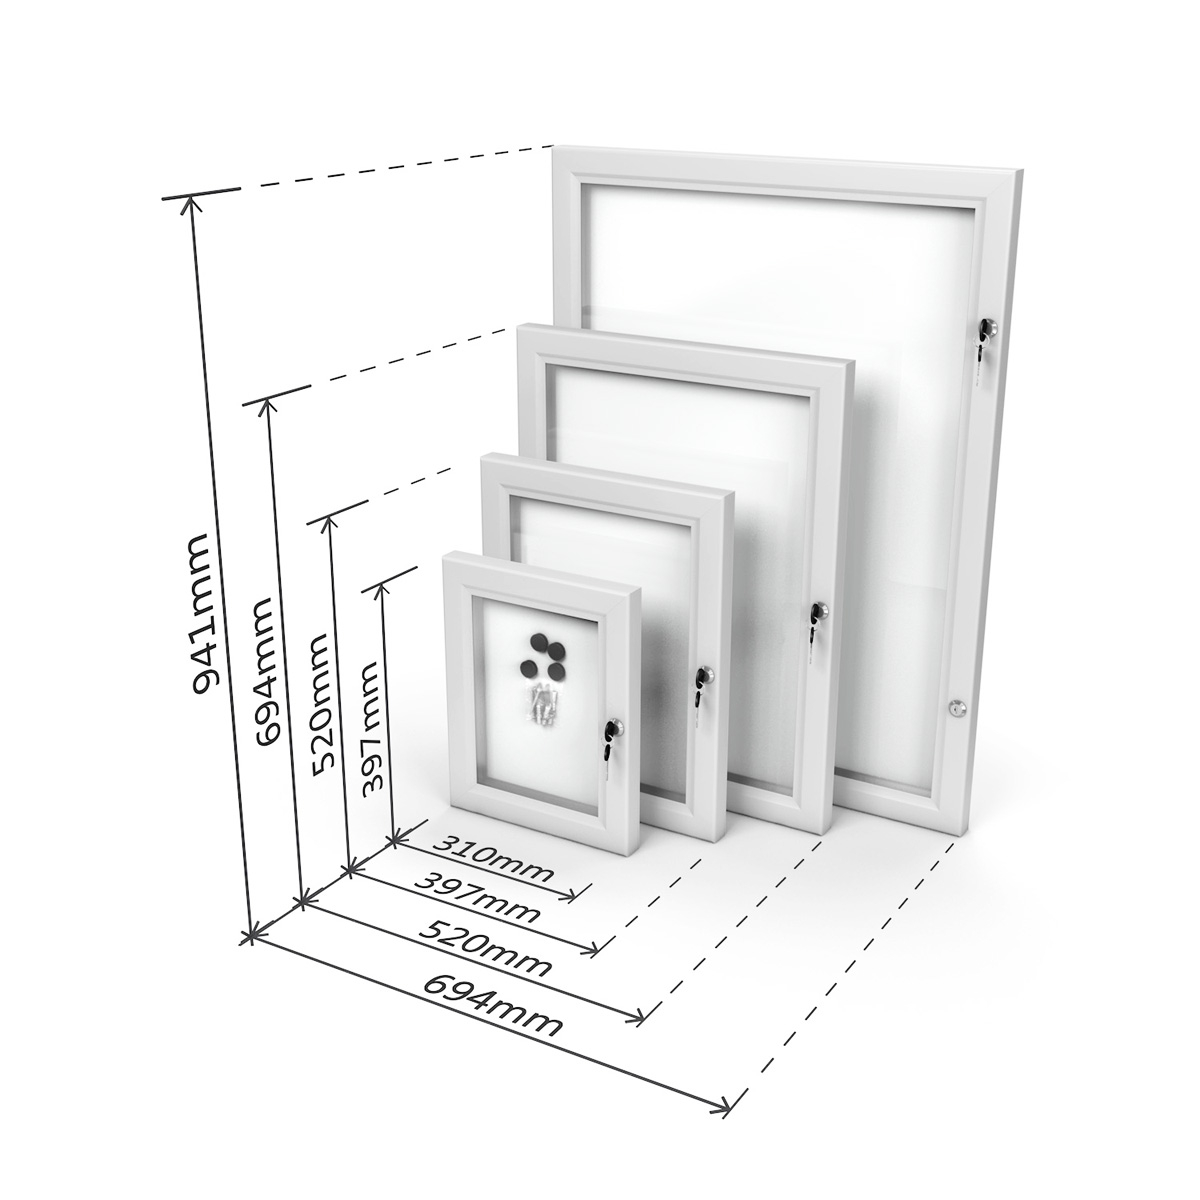 MEMOLOX® Magnetic Lockable Noticeboards Dimensions